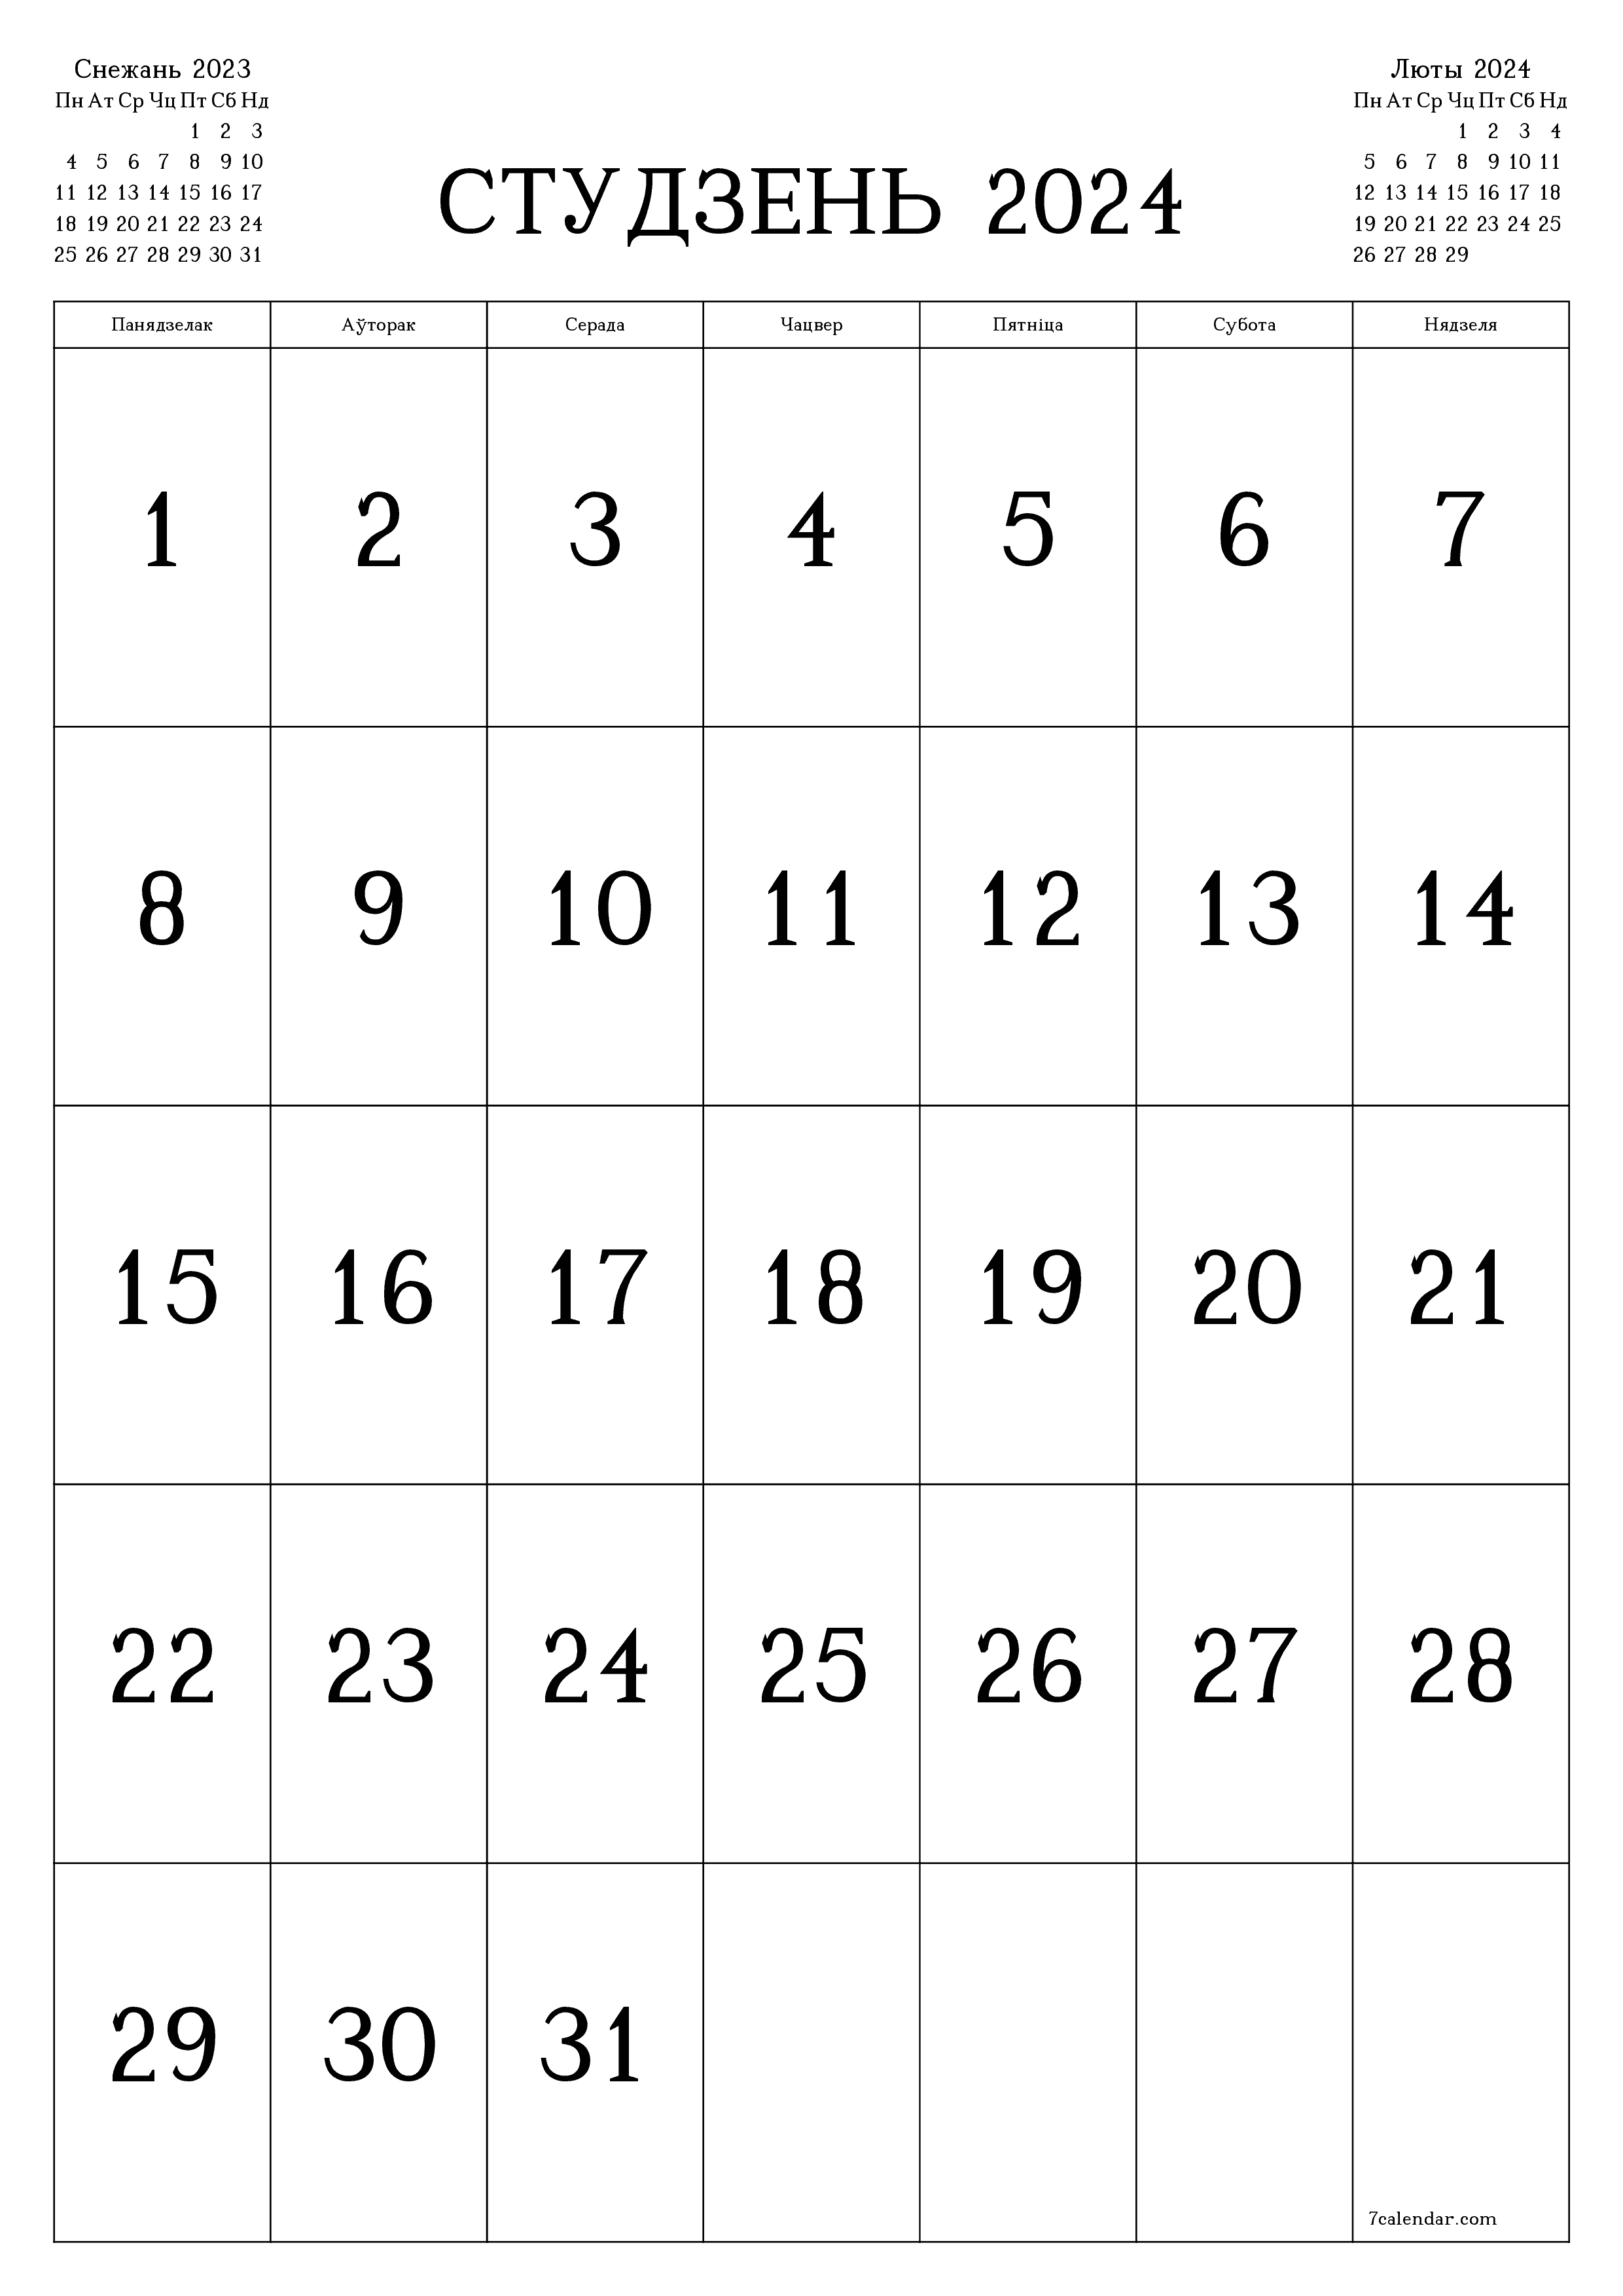  для друку насценны шаблон календара бясплатны вертыкальны Штомесячны каляндар Студзень (Студ) 2024